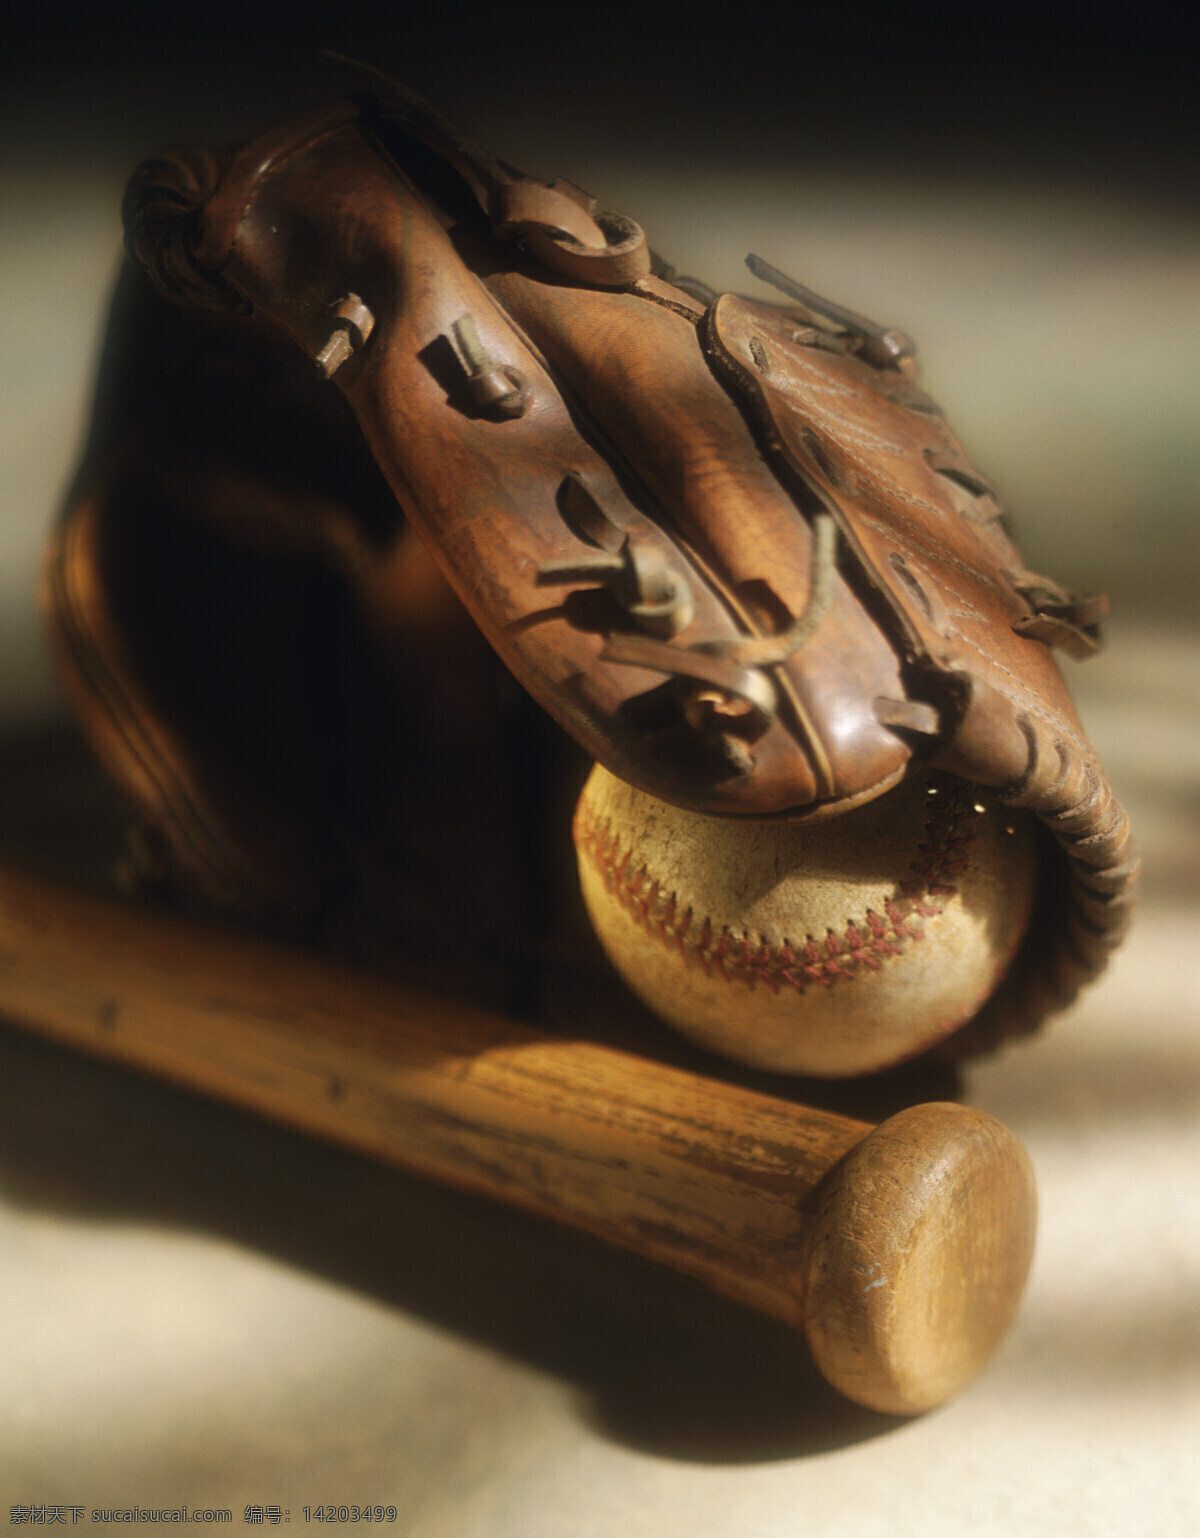 棒球套具 棒球 棒球棍 棒球棒 棒球手套 皮手套 皮革 破旧 体育运动 文化艺术